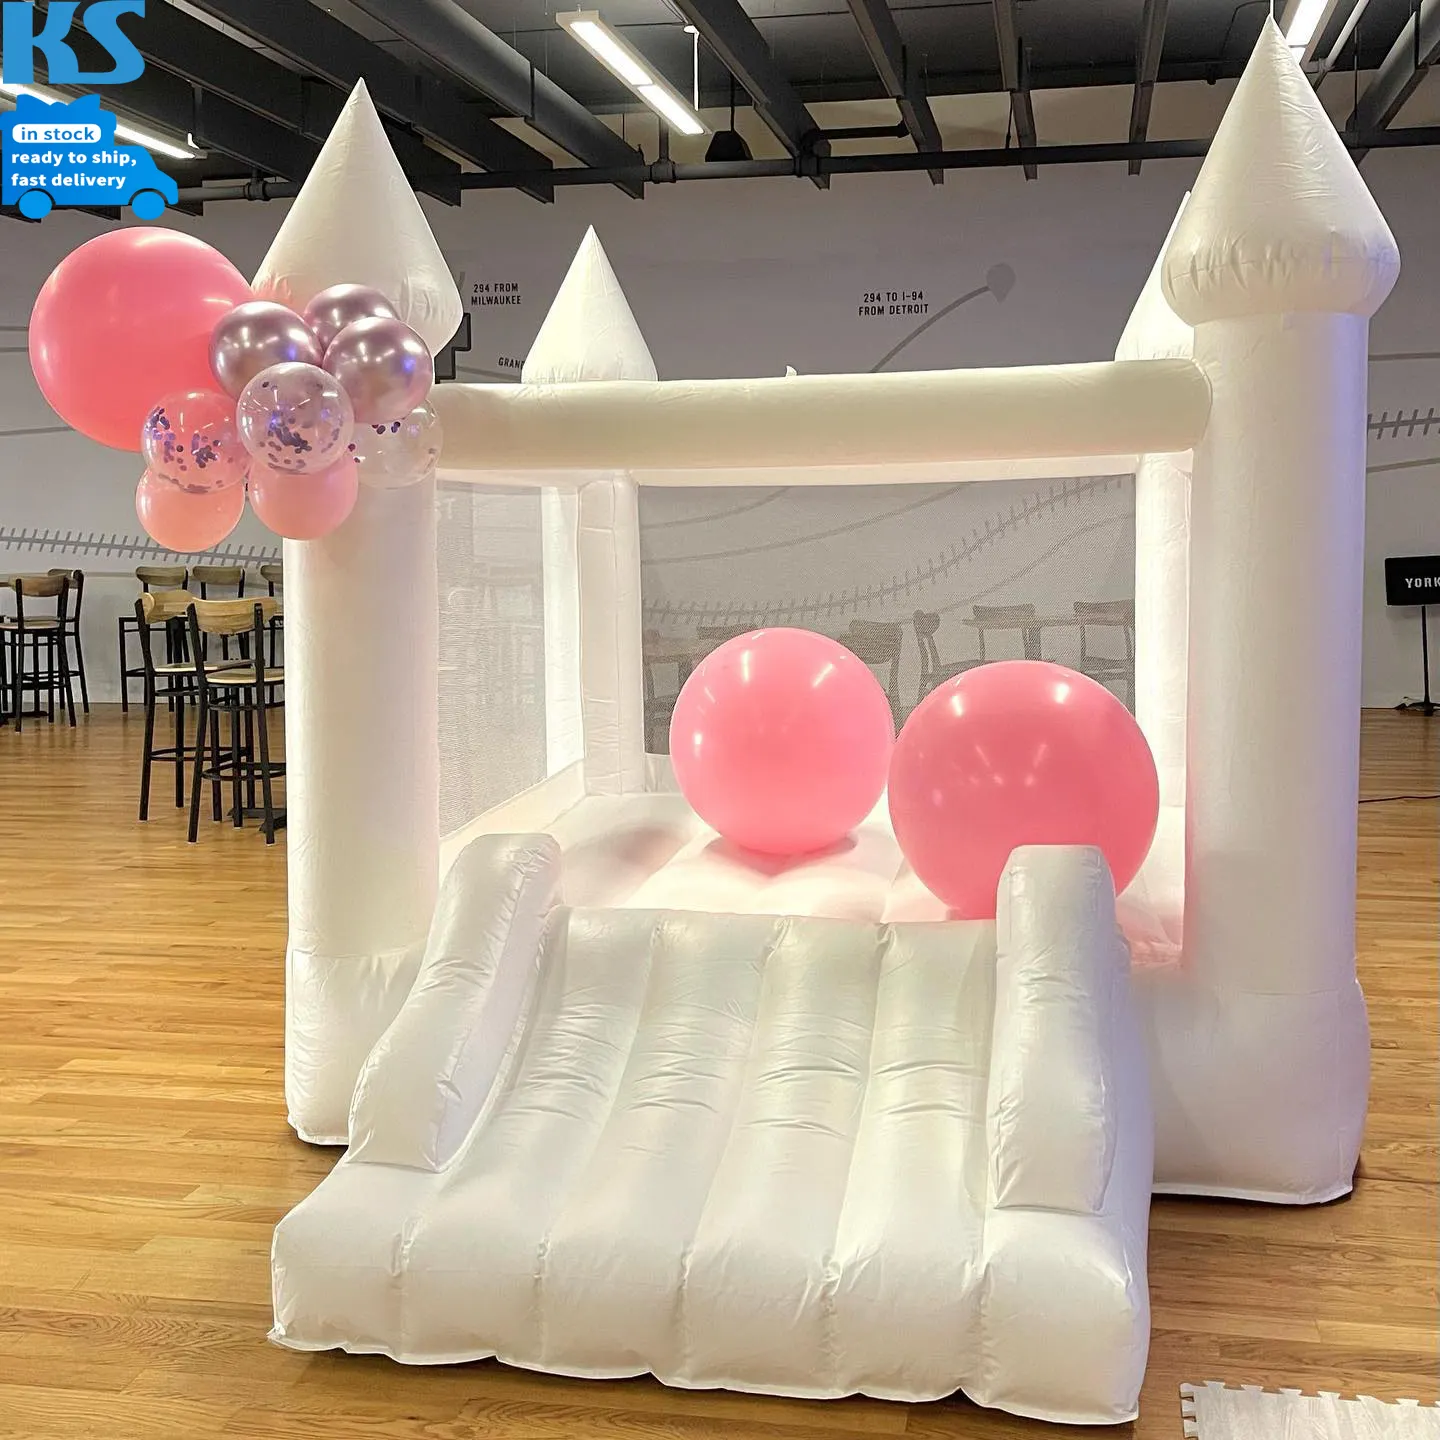 सफेद वाणिज्यिक pvc मिनी आकार के inflatable बाउंस हाउस स्लाइड पार्टी किराये के शो के साथ बाउंसी कैसल कूदते हुए बच्चों के लिए